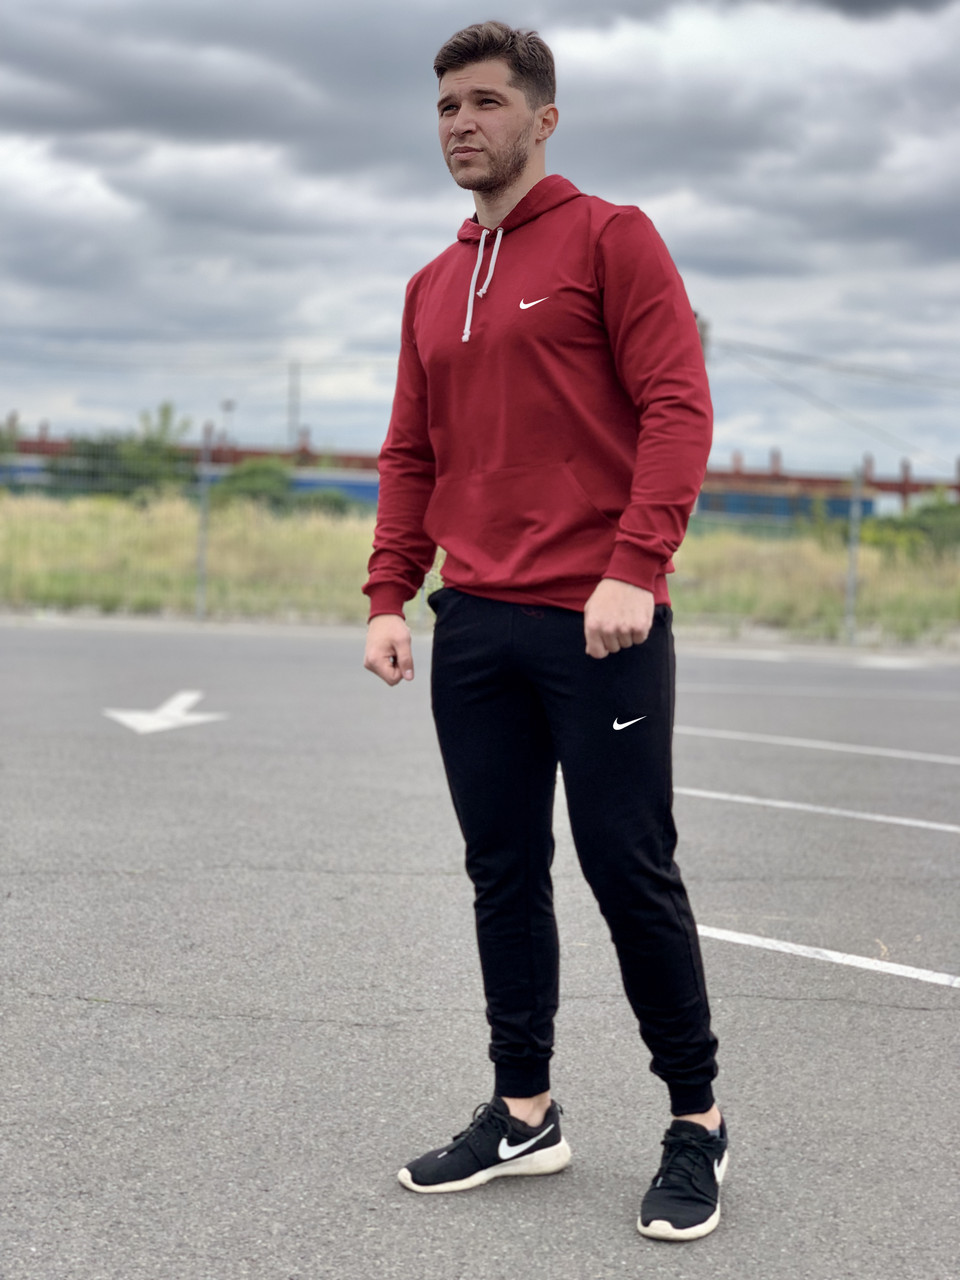 Мужской спортивный костюм Nike (найк) - бордовая худи и черные штаны / Весна-осень, 10 цветов на выбор